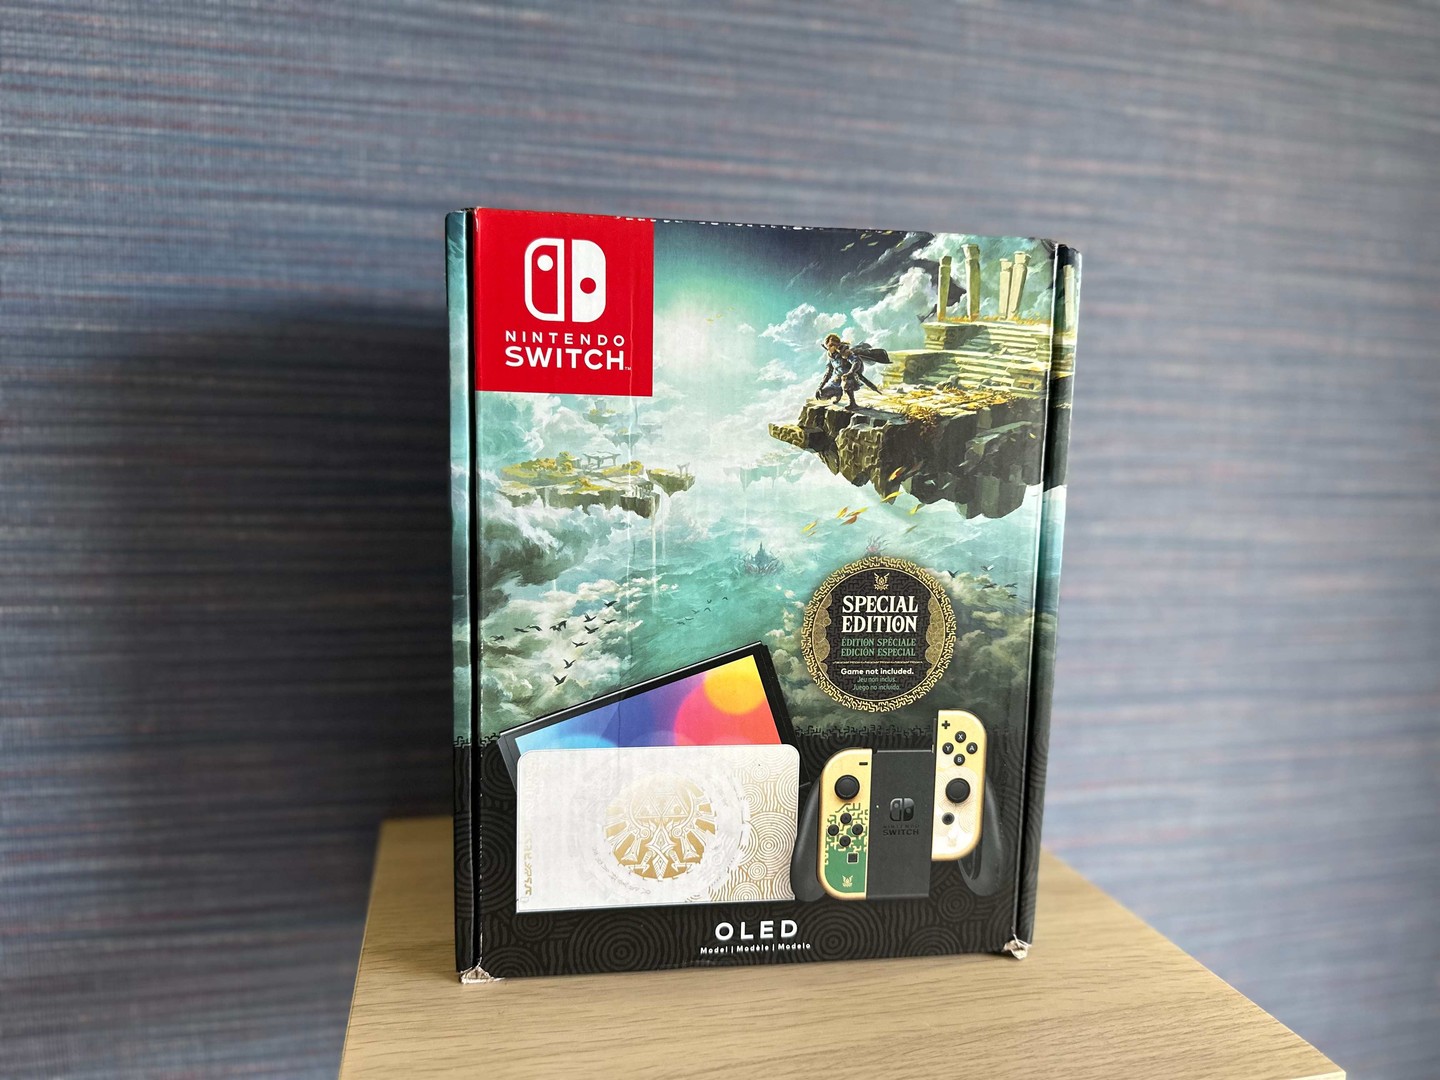 consolas y videojuegos - Vendo Consola Nintendo Switch OLED Zelda Edition Nuevos , Garantía $ 20,500 NEG